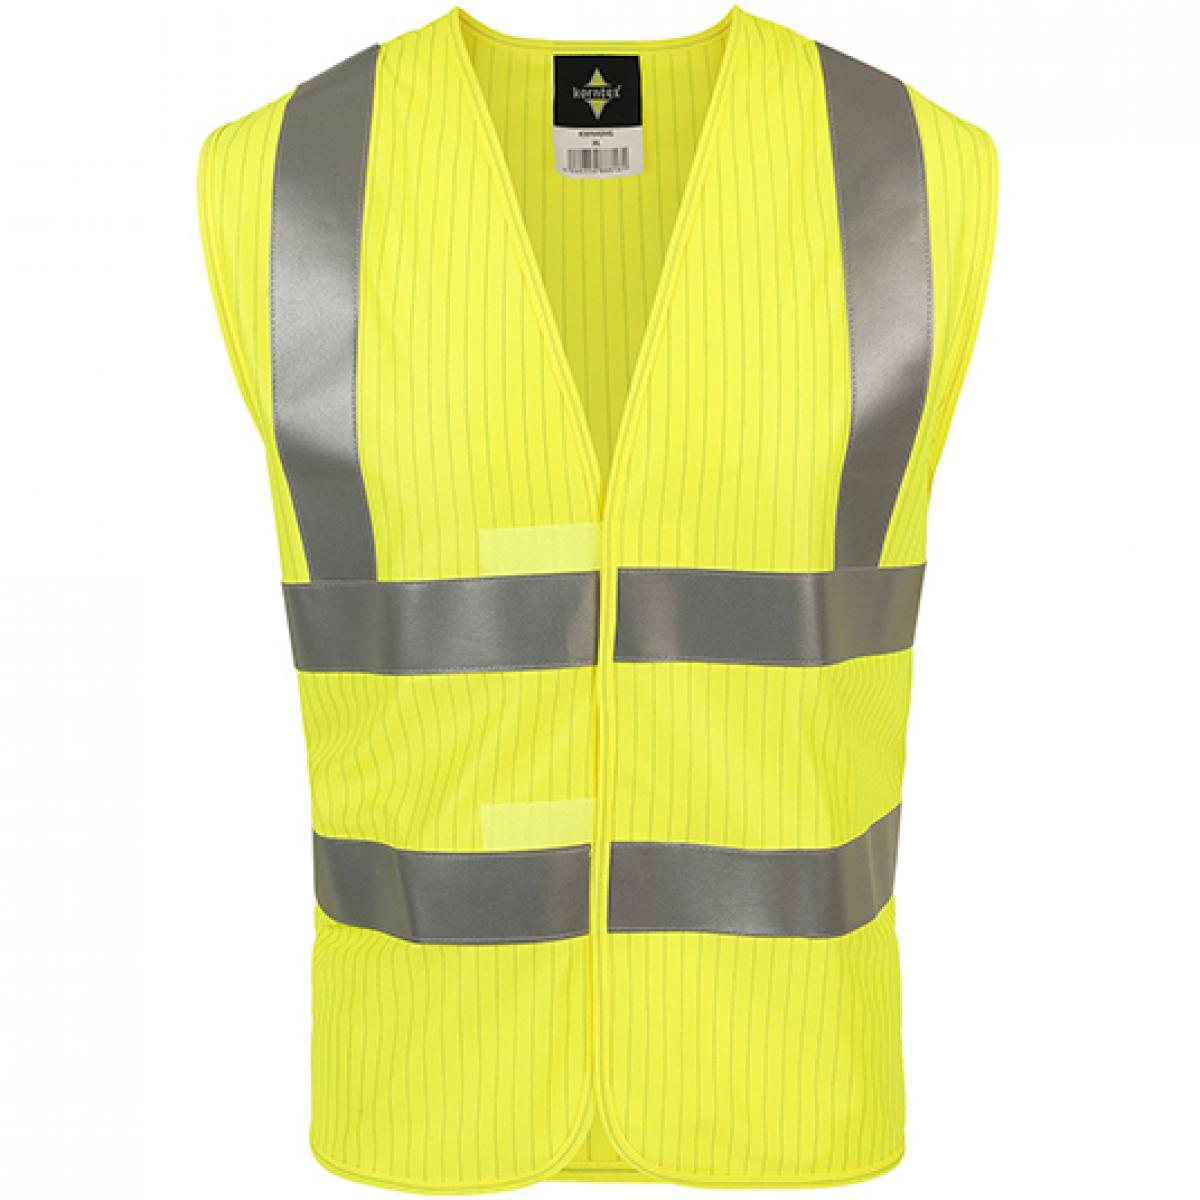 Hersteller: Korntex Herstellernummer: KXFRAS Artikelbezeichnung: Triple Norm Vest, EN ISO 20471:2013 + A1:2016 Farbe: Signal Yellow